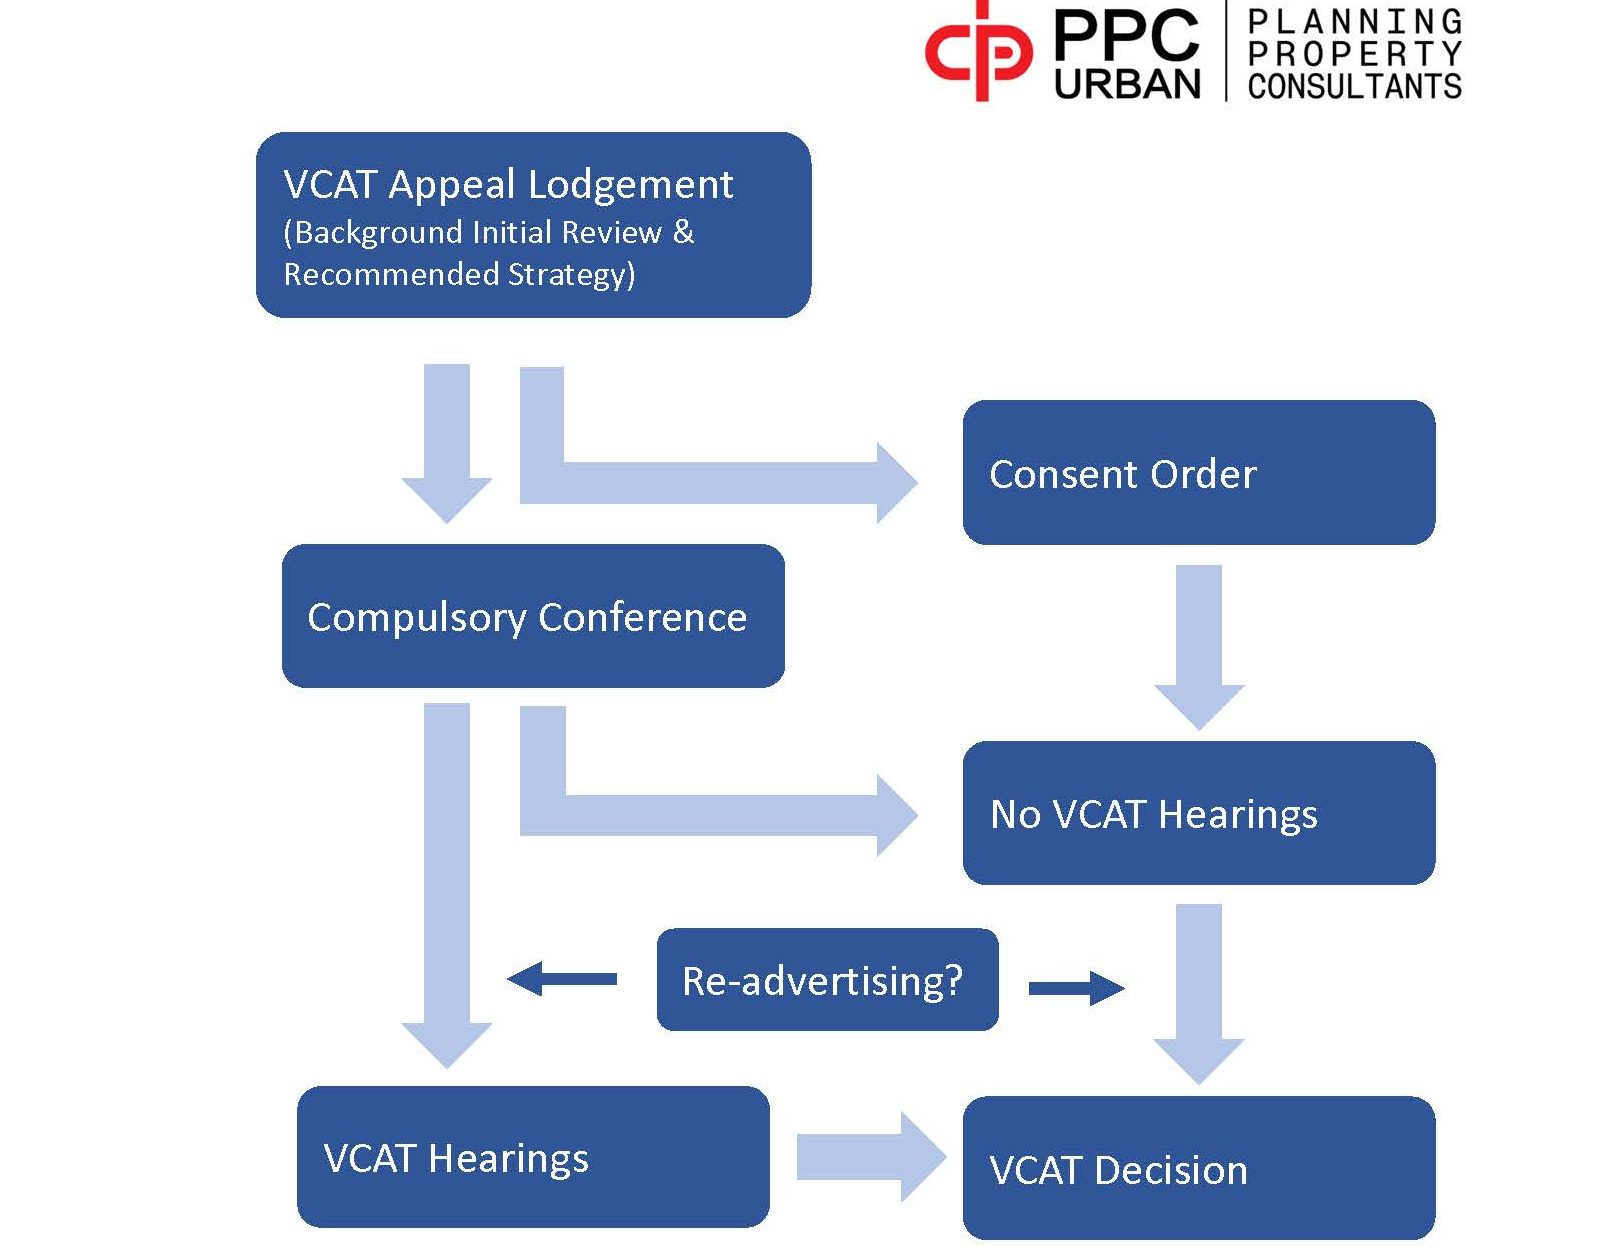 PPC Urban's indicative process of VCAT Hearings